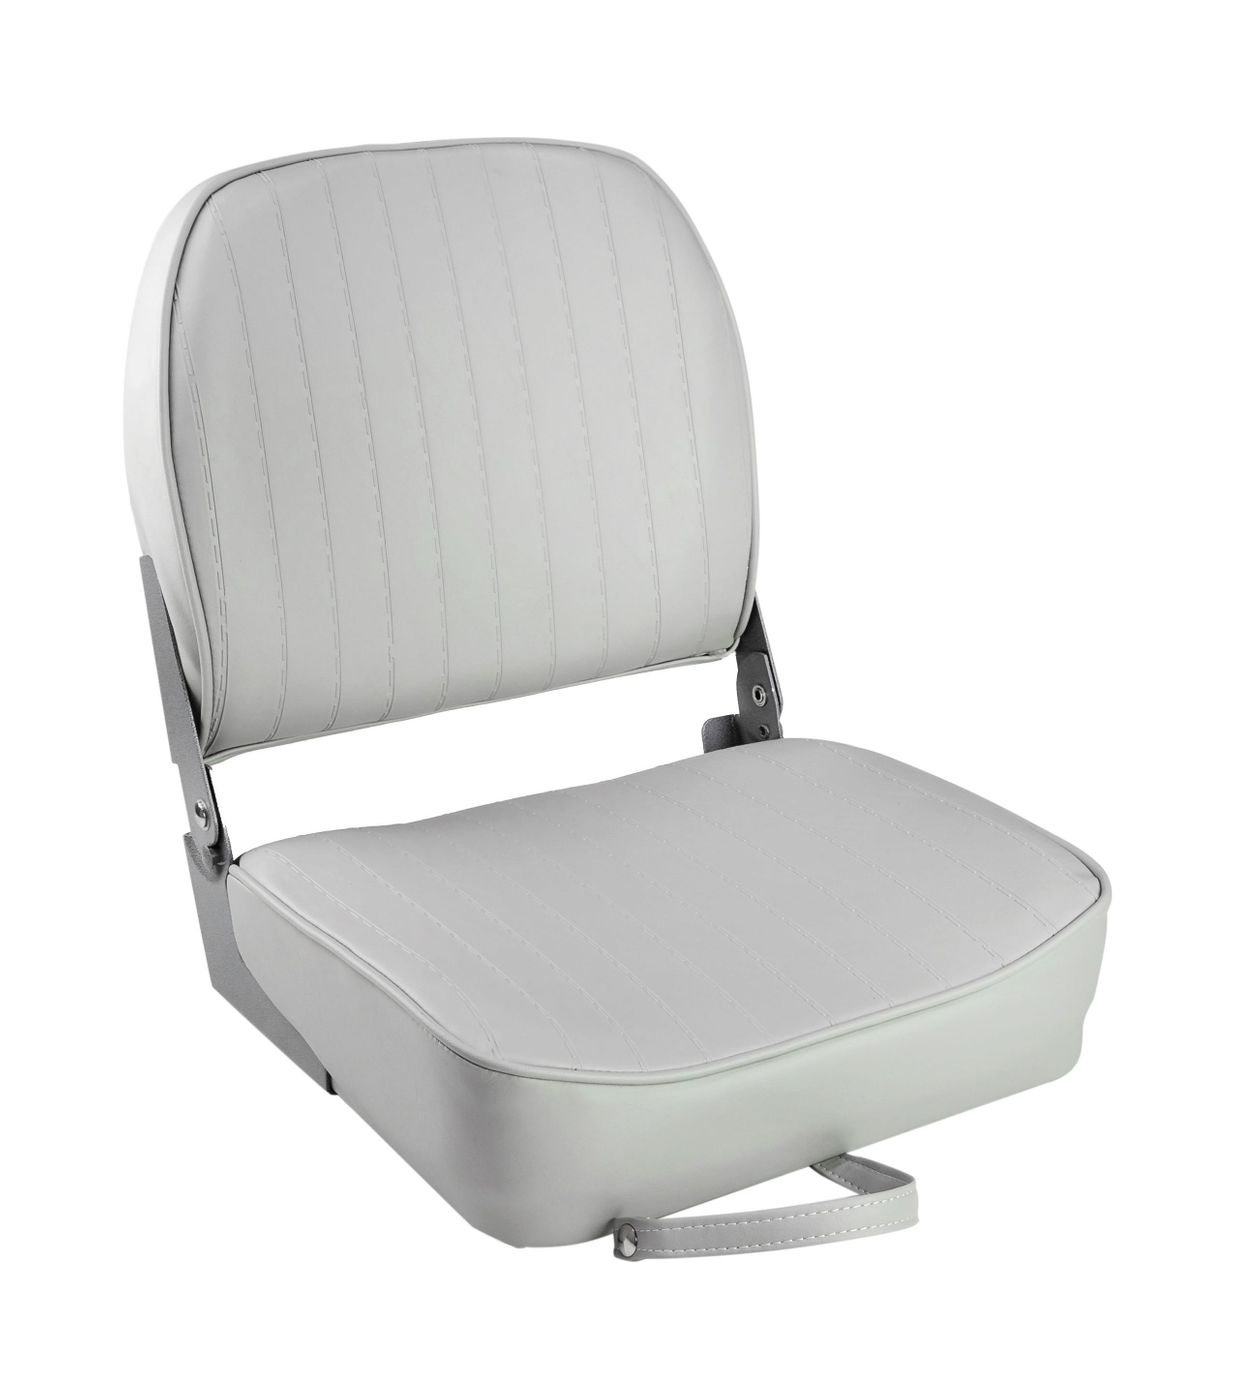 Кресло складное мягкое ECONOMY с низкой спинкой, цвет серый 1040623 кресло складное мягкое economy с высокой спинкой обивка камуфляжная ткань 1040647